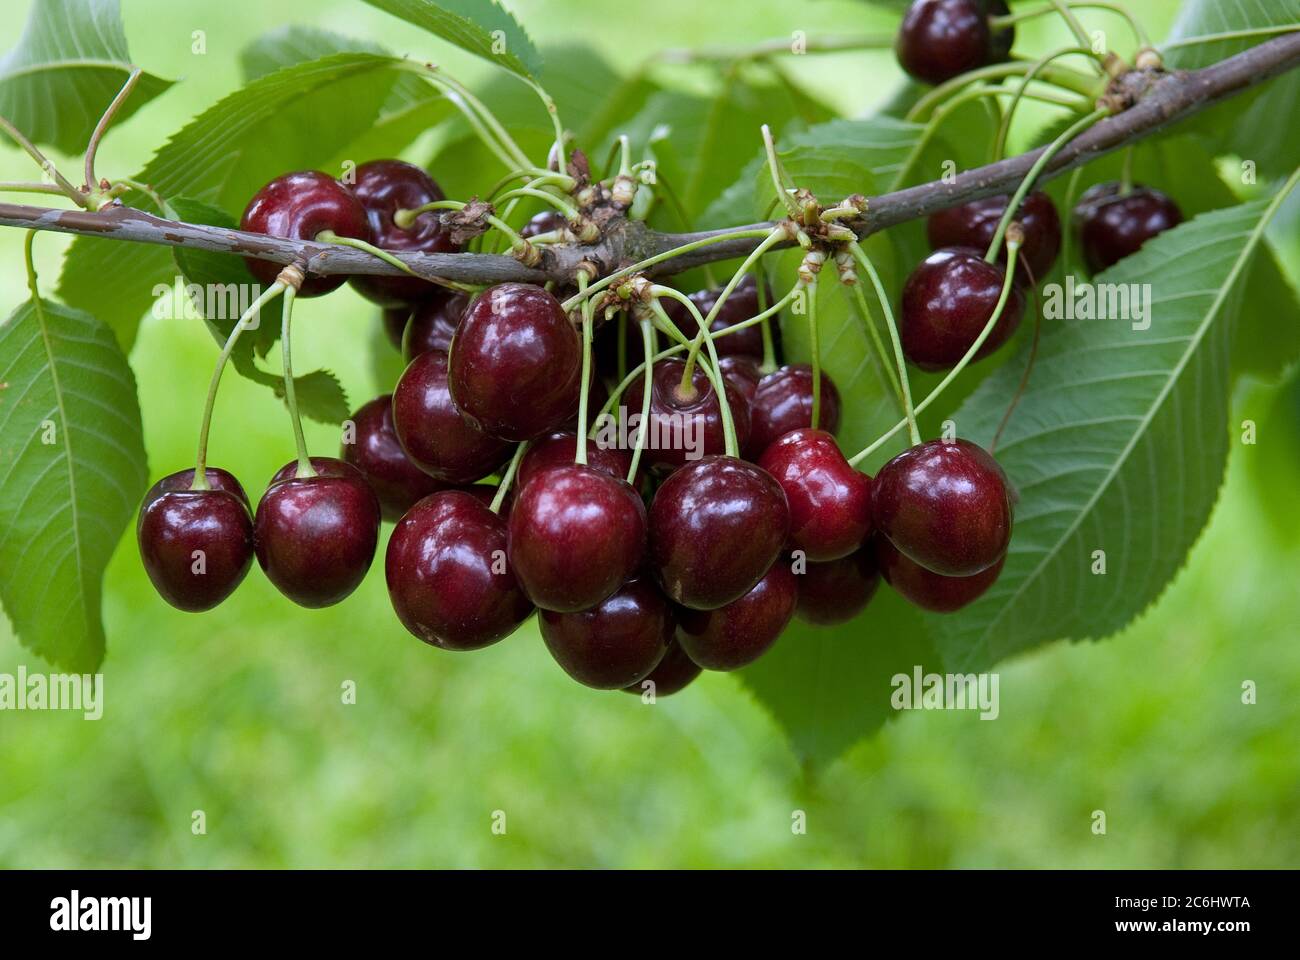 Suess-Kirsche Prunus avium Kanada, Sweet cherry Prunus avium Canada Stock Photo